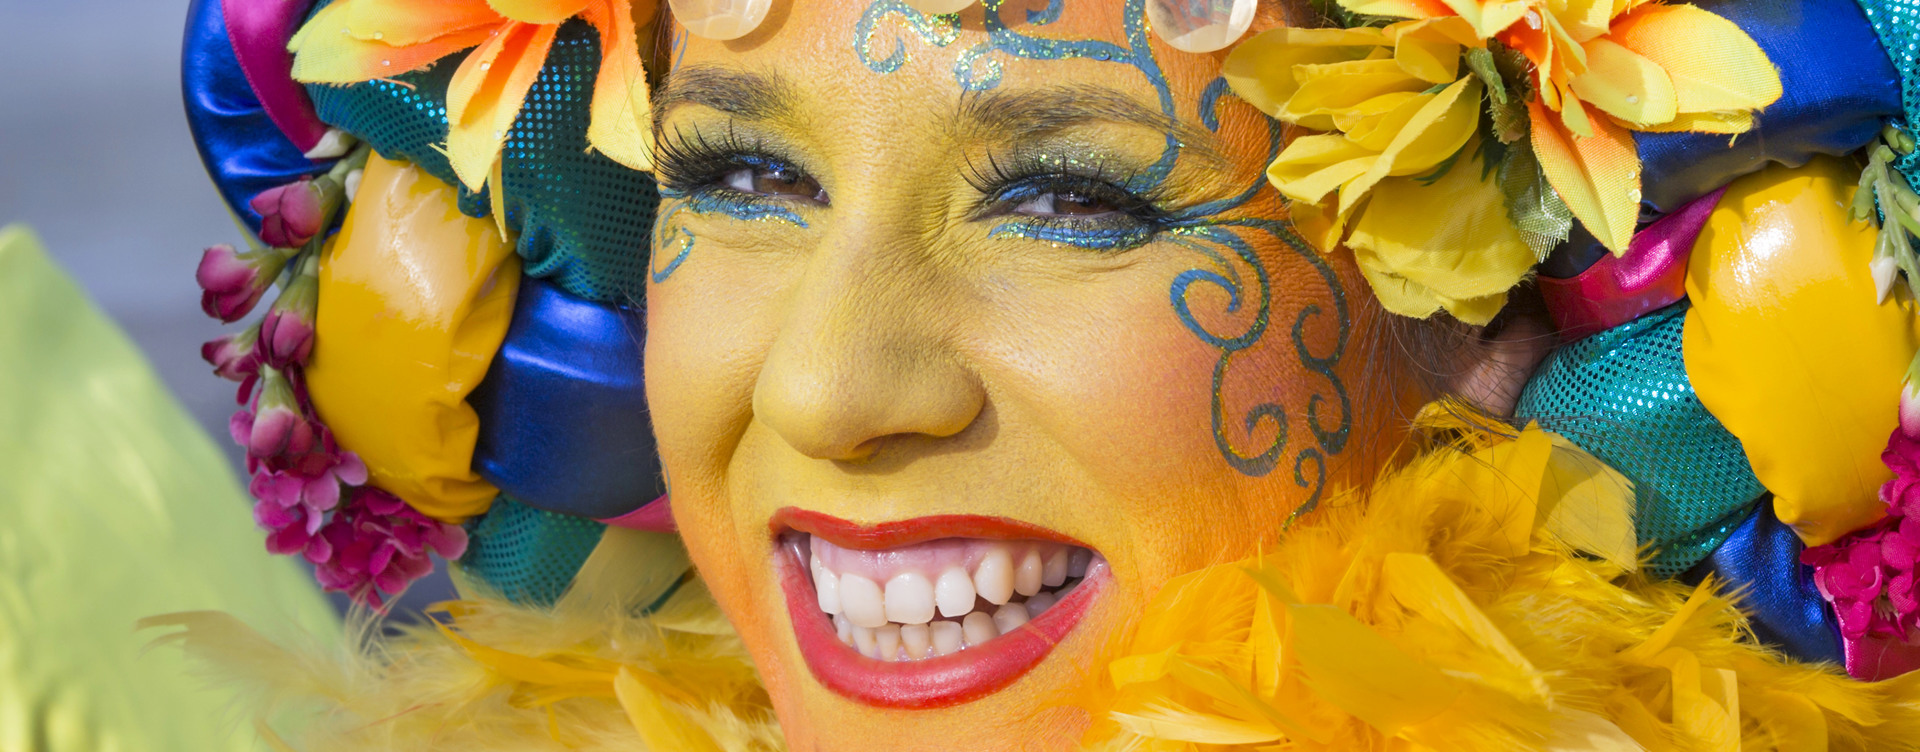 Beleef een onvergetelijke carnaval in Maastricht:
dé carnavalsstad van Nederland